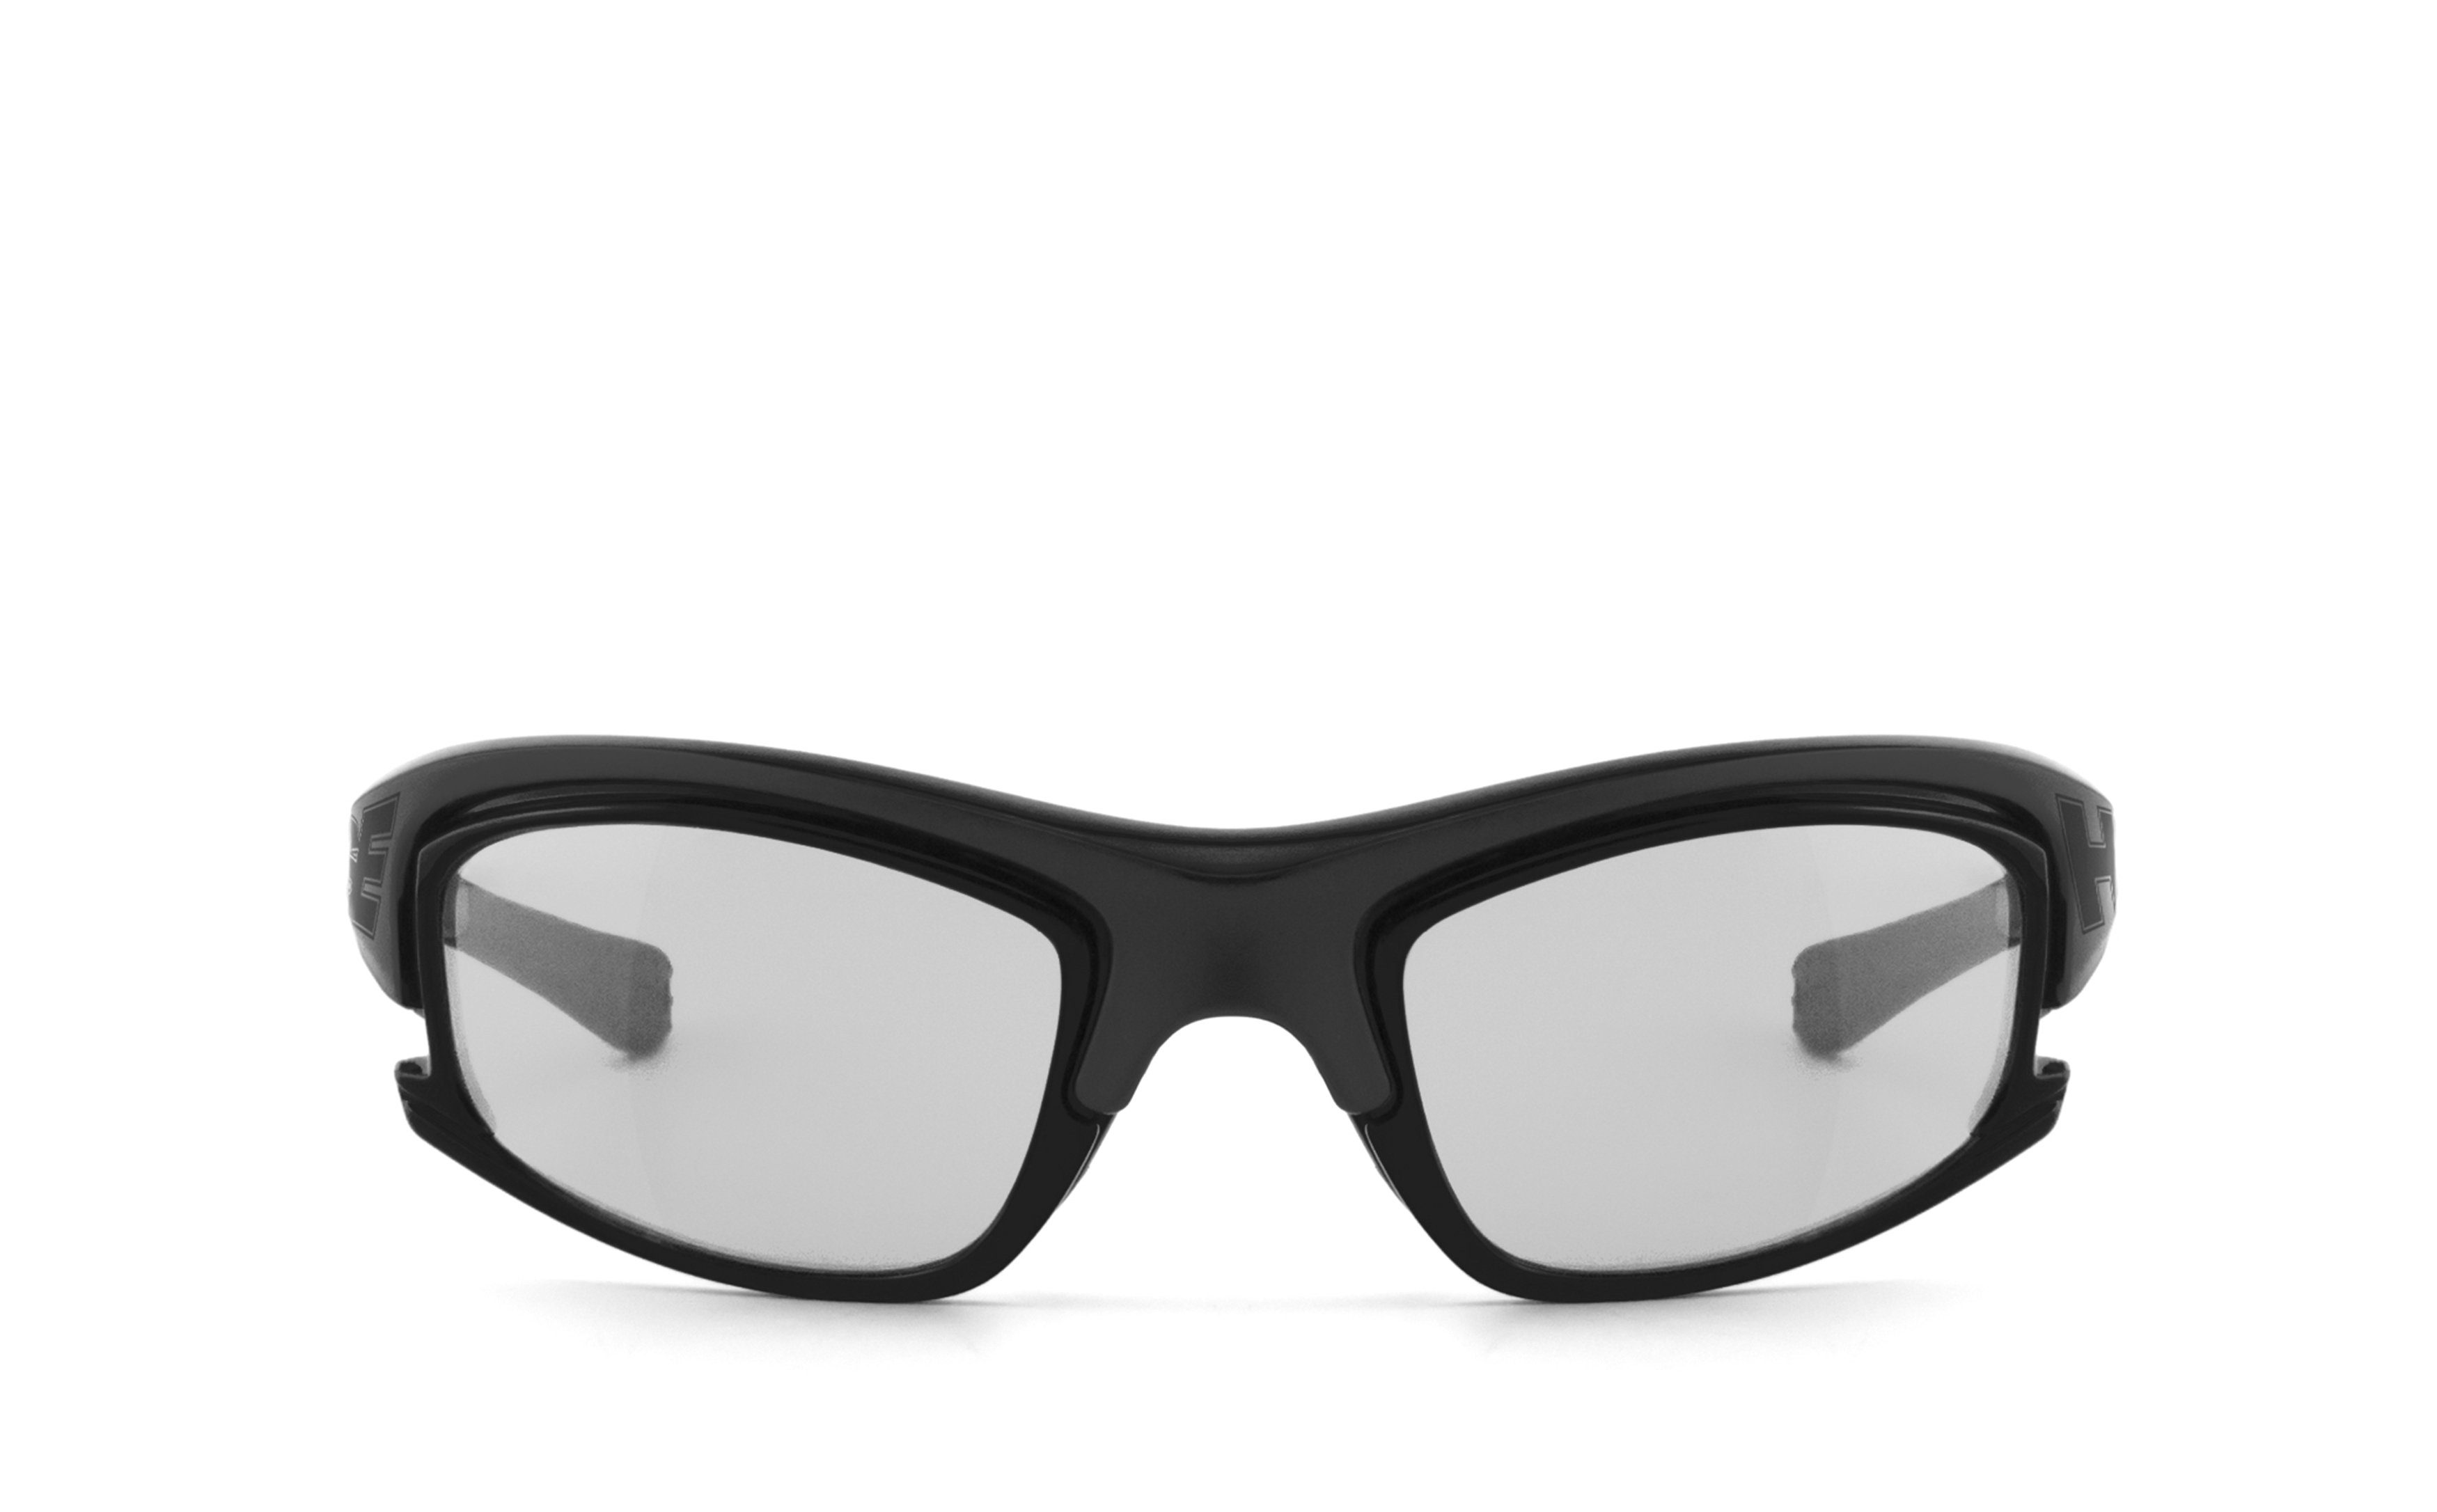 Gläser - SportEyes schnell 2015, Sportbrille selbsttönende HSE